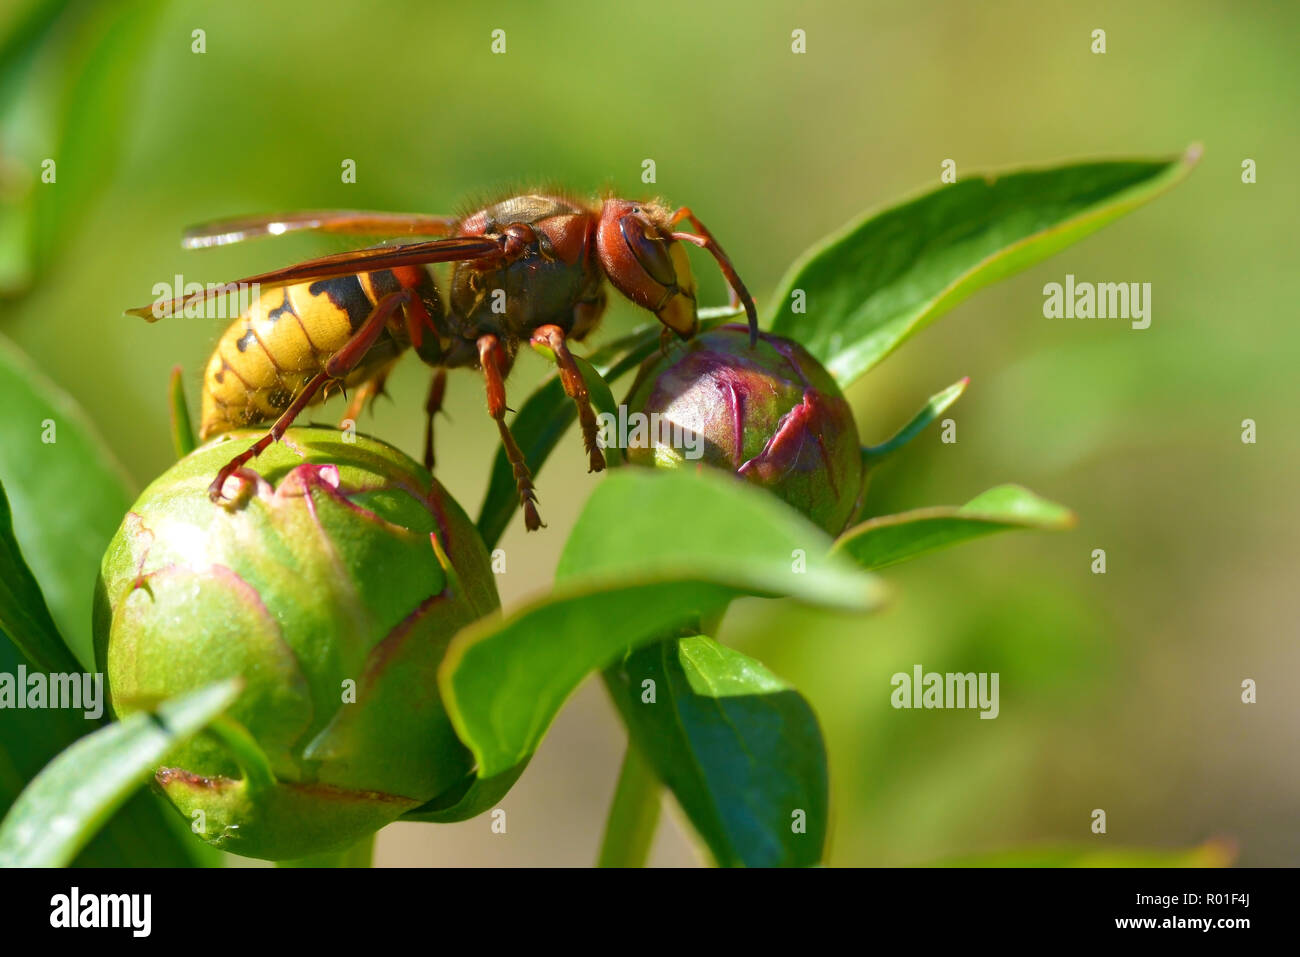 Primo piano Unione hornet (Vespa crabro) su bud di peonia fiore visto dal profilo Foto Stock